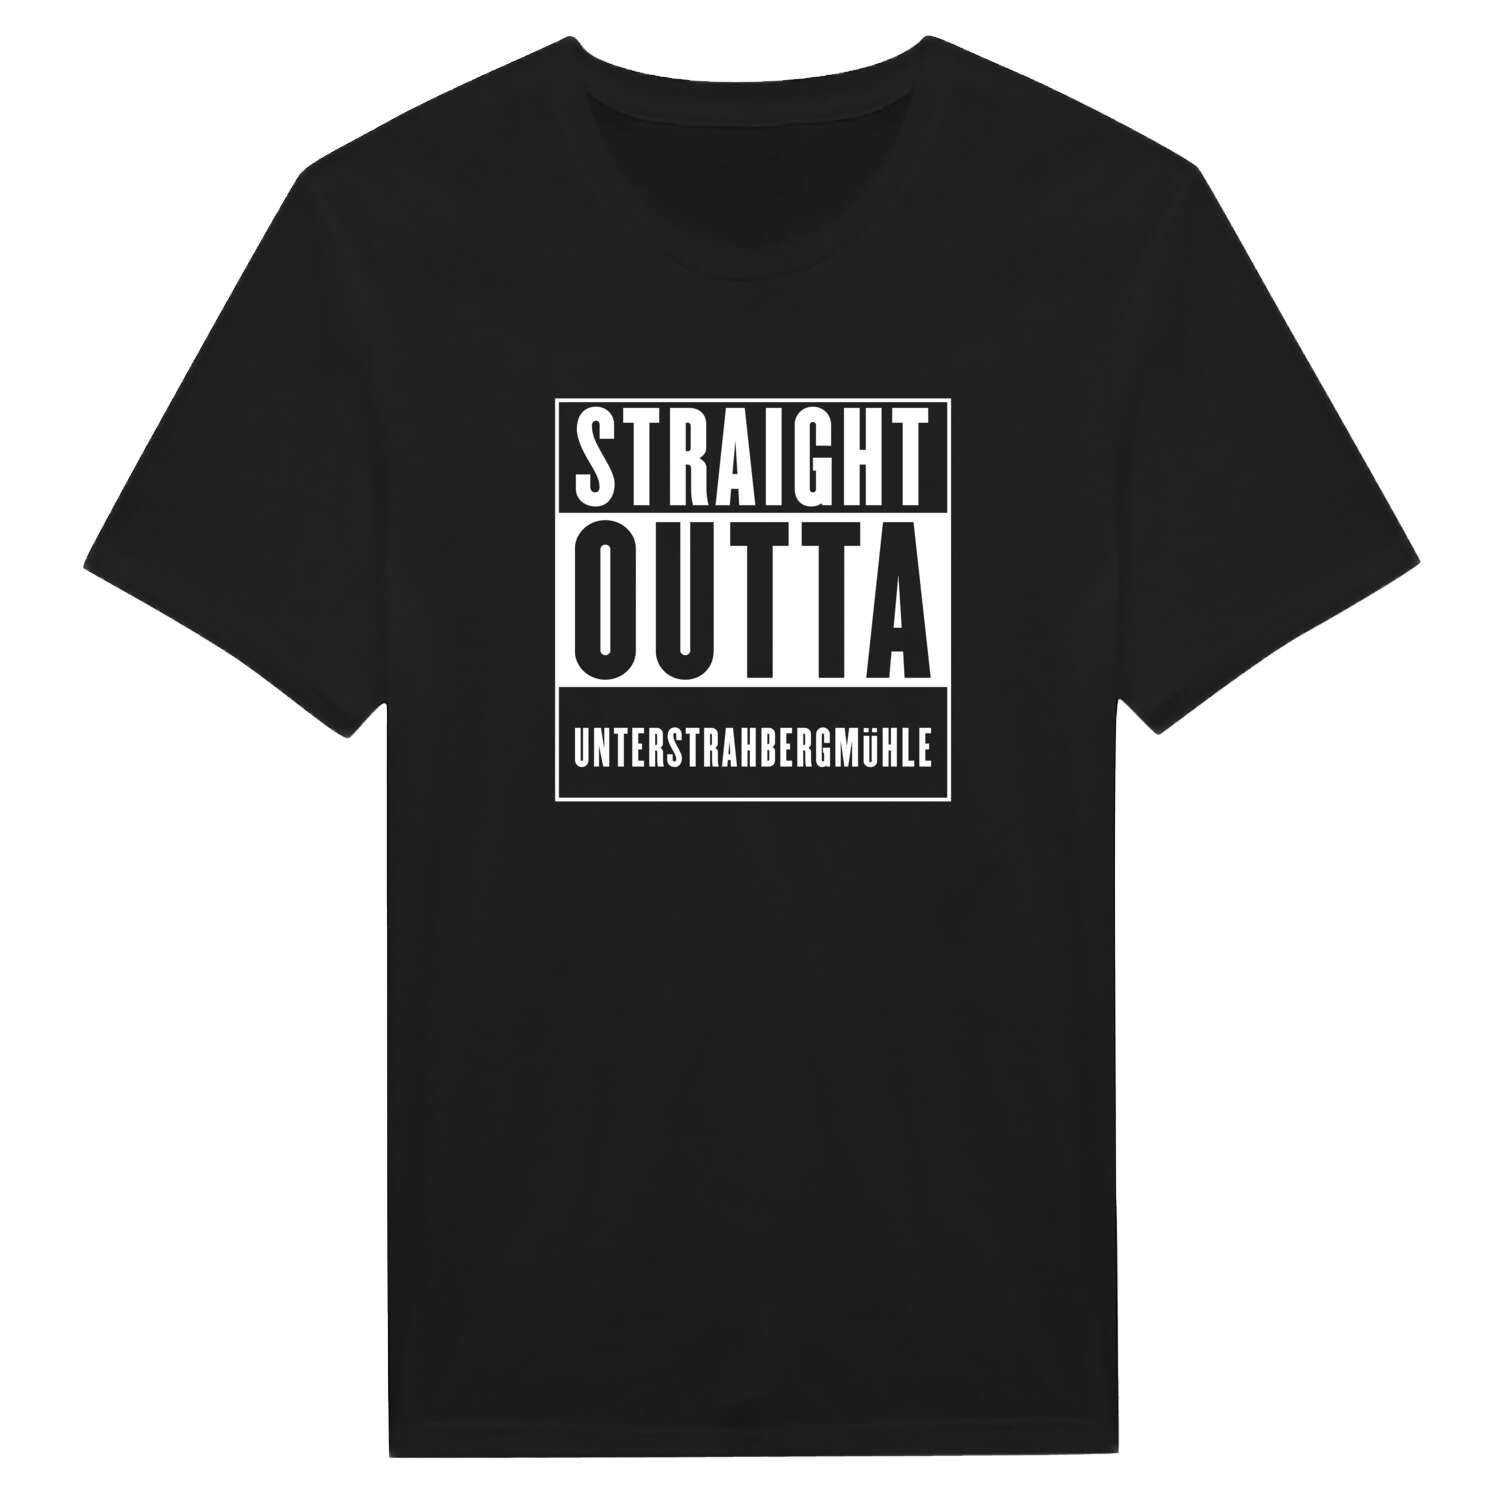 Unterstrahbergmühle T-Shirt »Straight Outta«